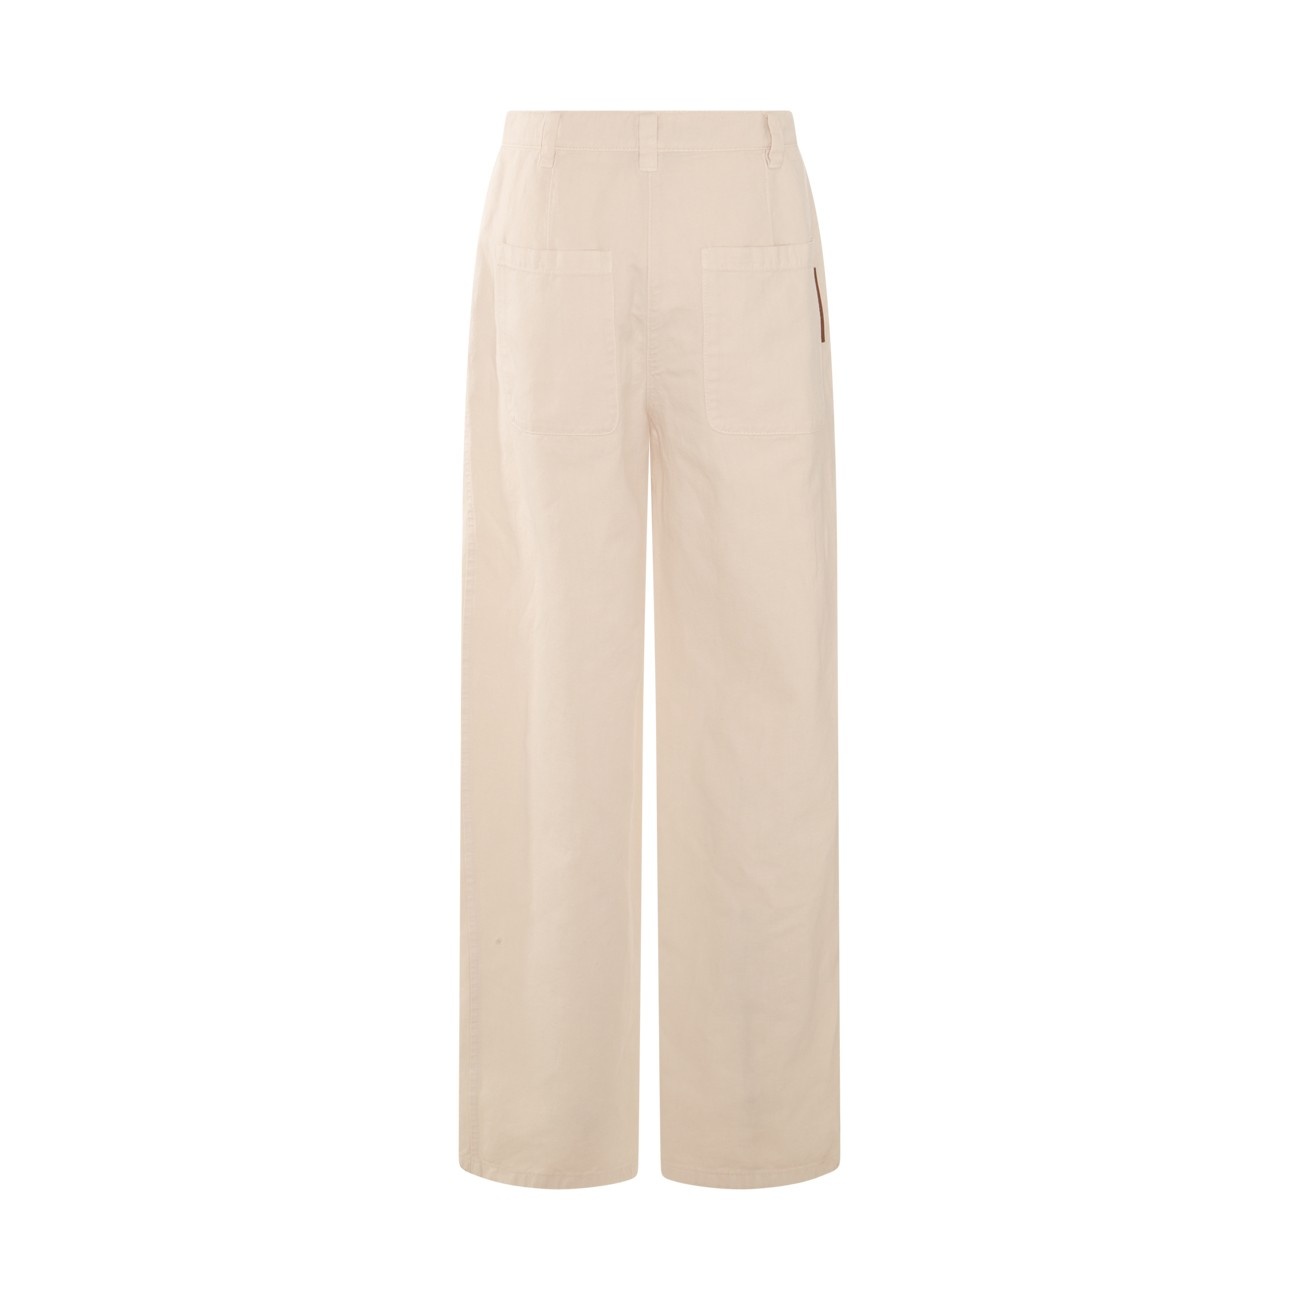 beige cotton pants - 2